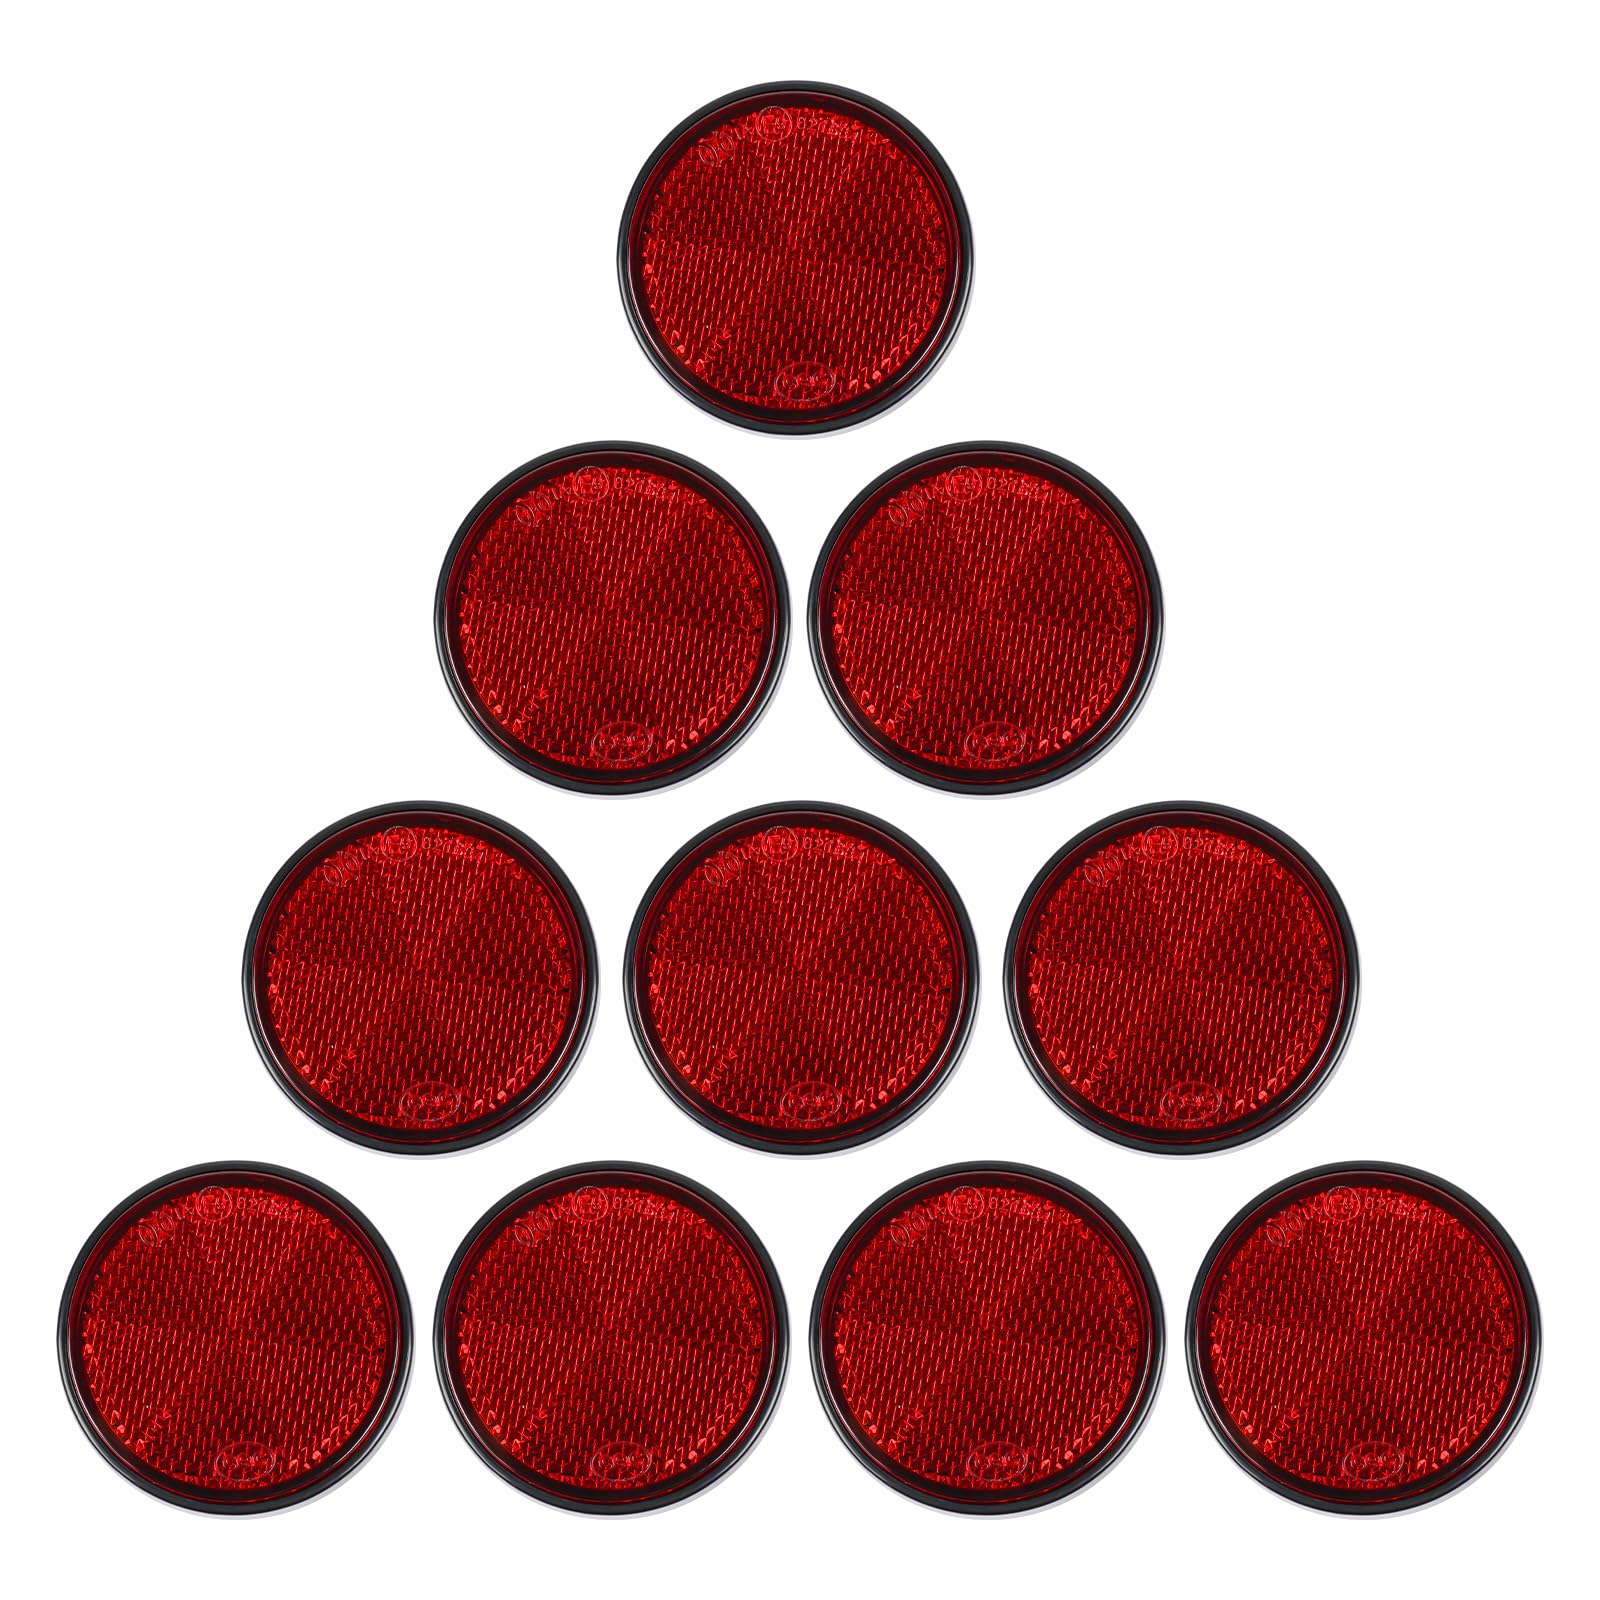 Yinaolan 10 Stück rote Selbstklebende runde Reflektoren, E9-Zulassung Verkehrssicherheit aufklebbare Rückreflektoren für Anhänger, Wohnwagen, LKW, LKW oder landwirtschaftliche Maschinen von Yinaolan